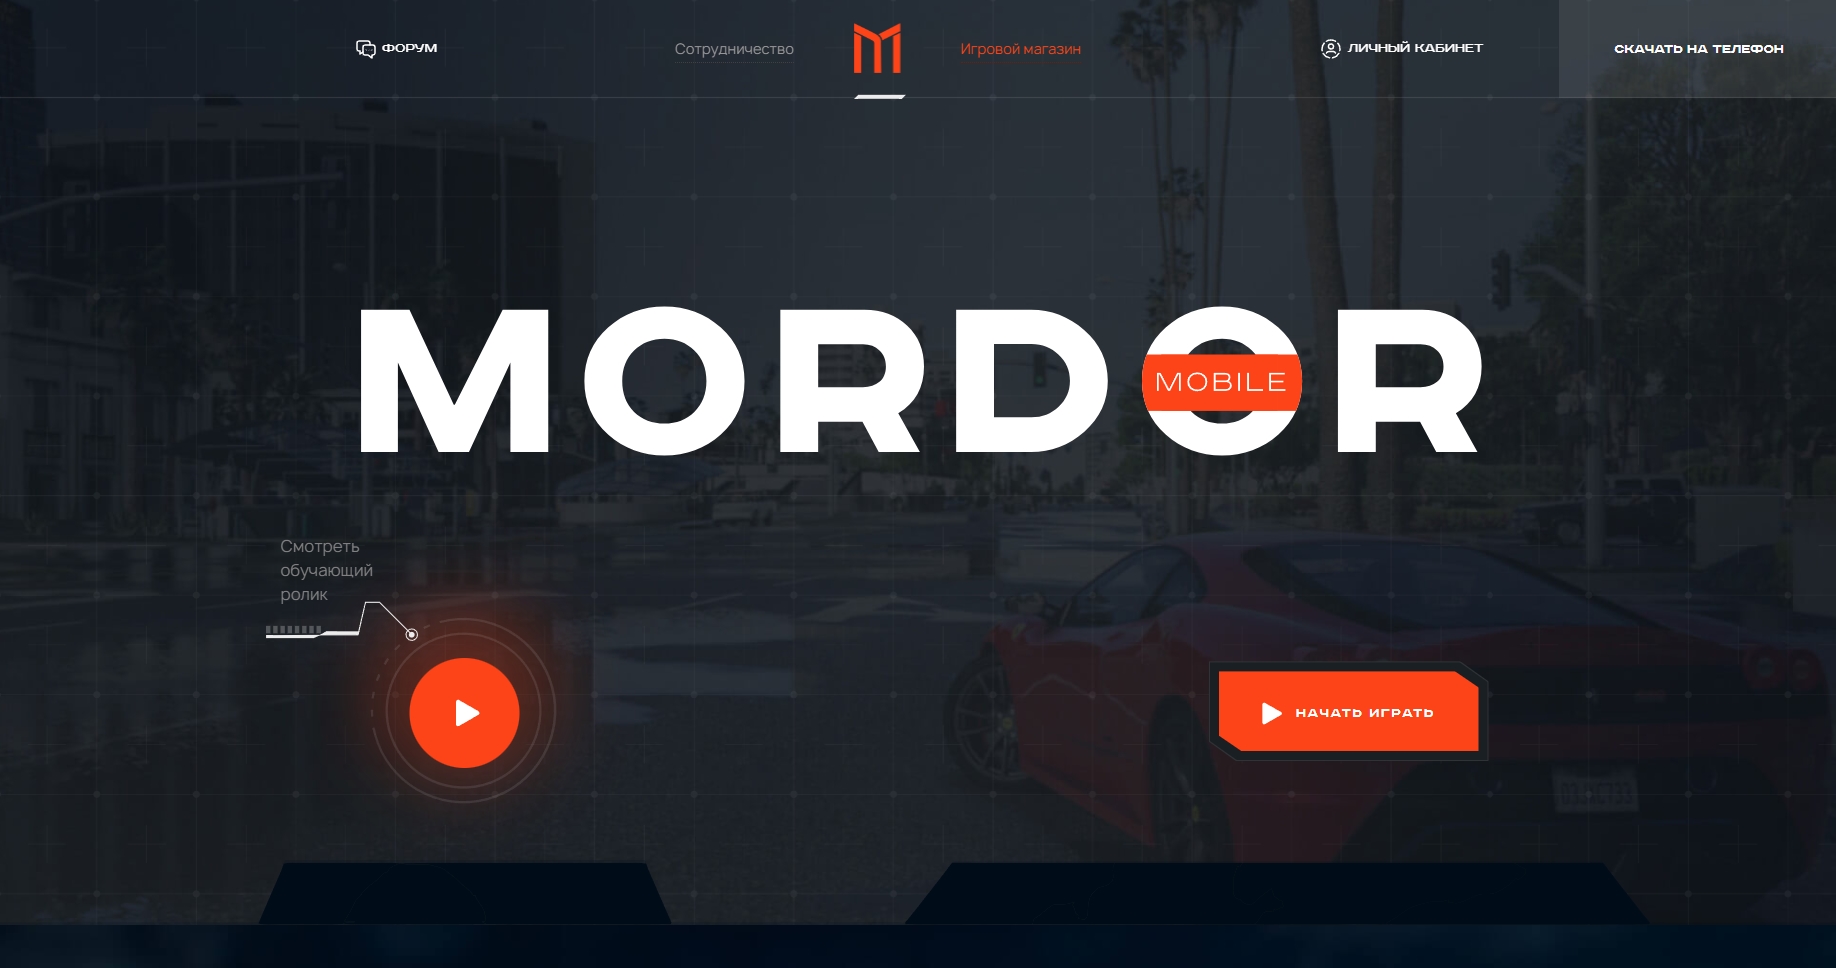 🎮 Mordor RP - Exciting GTA SA Mobile Roleplay Server 🚗